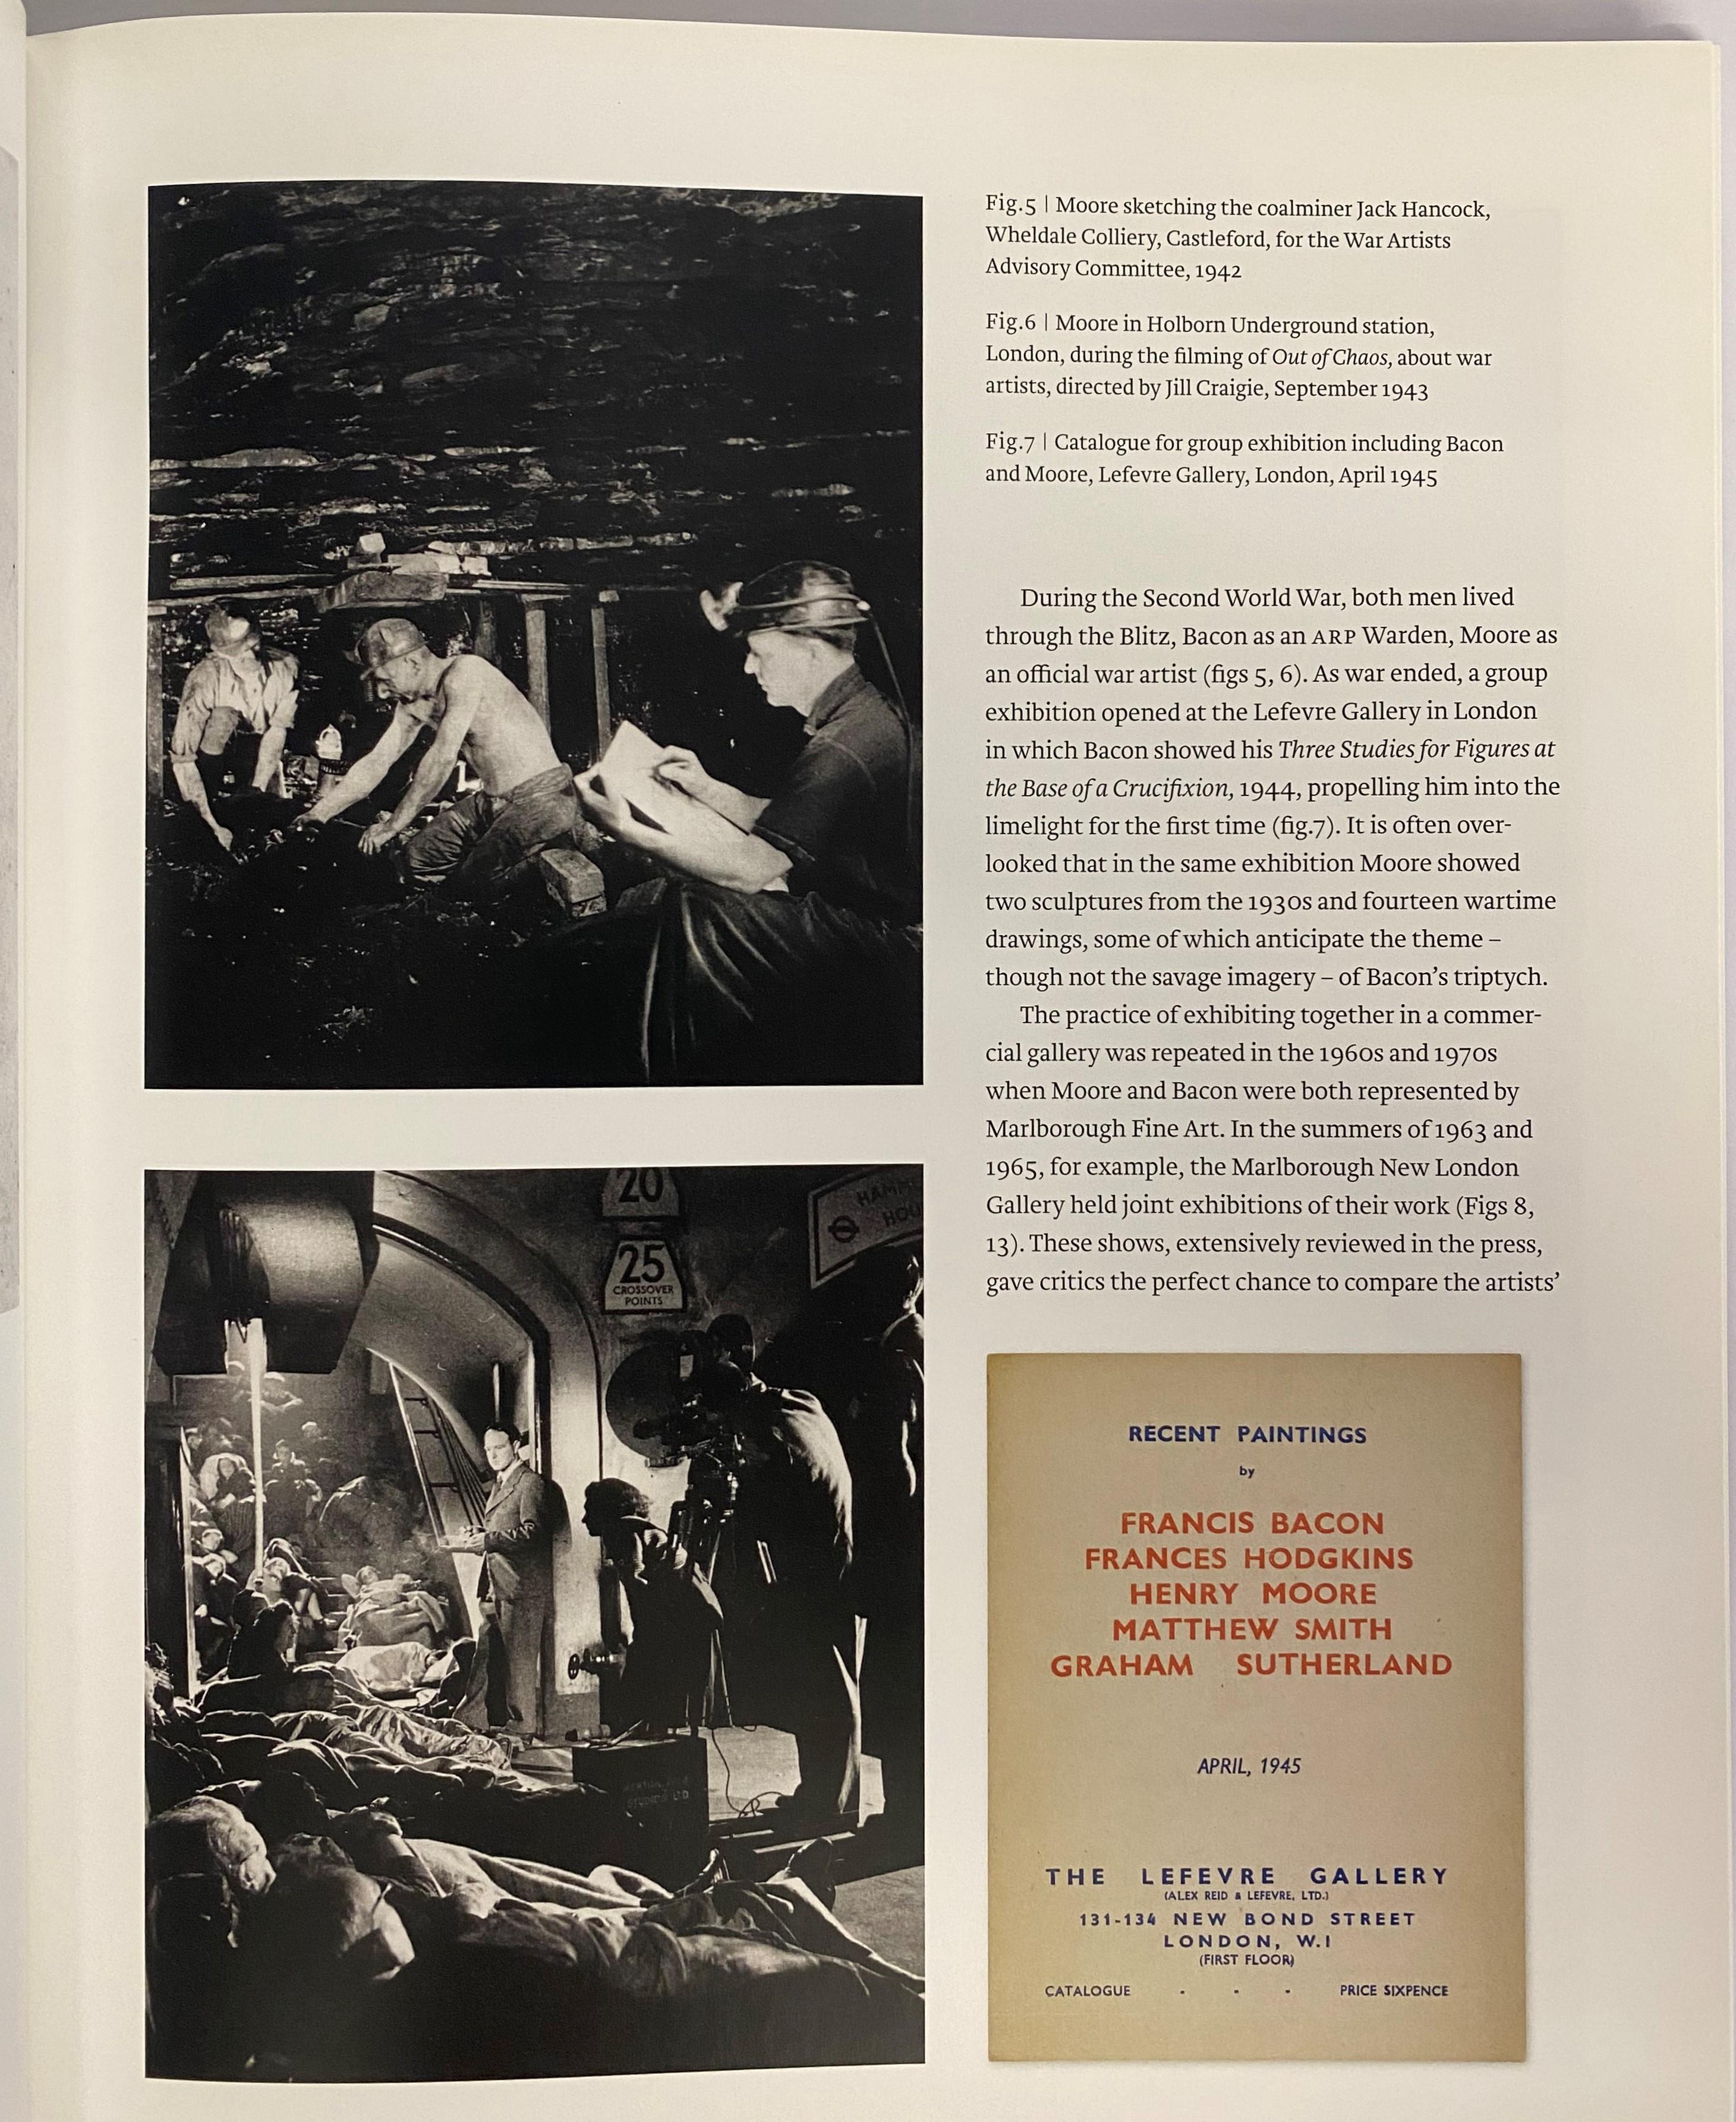 Henry Moore (1898 - 1986) und Francis Bacon (1909 - 1992) haben in ihren unterschiedlichen Medien unvergessliche Bilder der menschlichen Figur geschaffen. Die unterschiedlichen Bildsprachen, die jeder Künstler im Laufe von mehr als einem halben